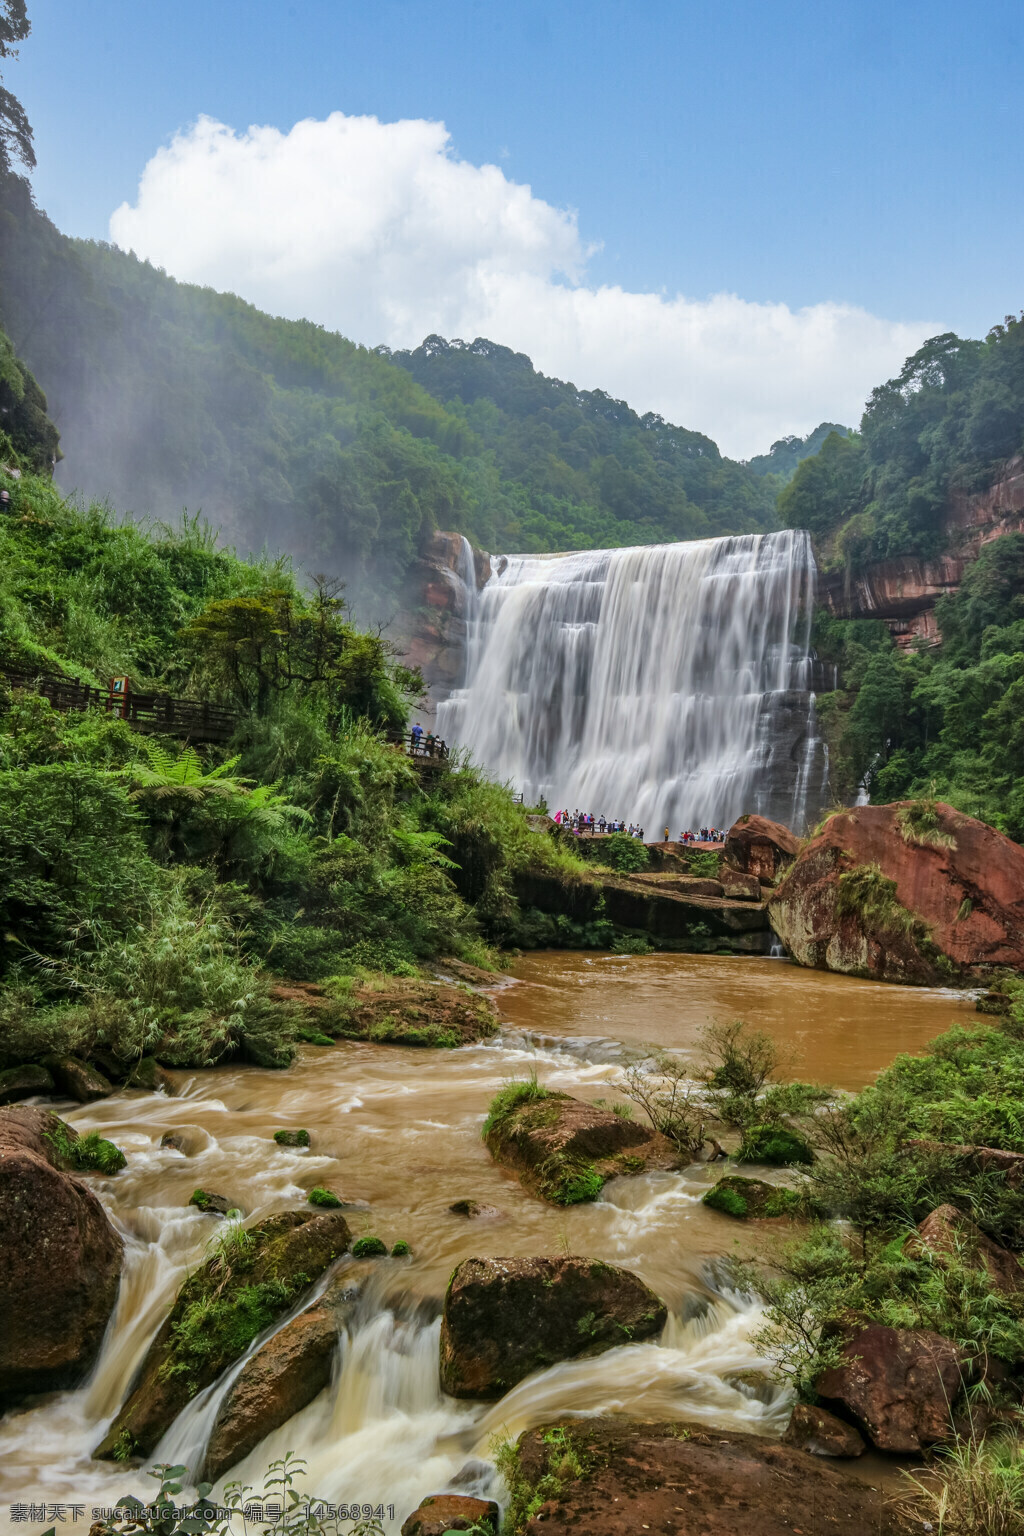 贵州 赤水河 瀑布 赤水河大瀑布 旅行 旅游 自然 风景 河流 赤水大瀑布 自然美 水 贵州风光 赤水风景